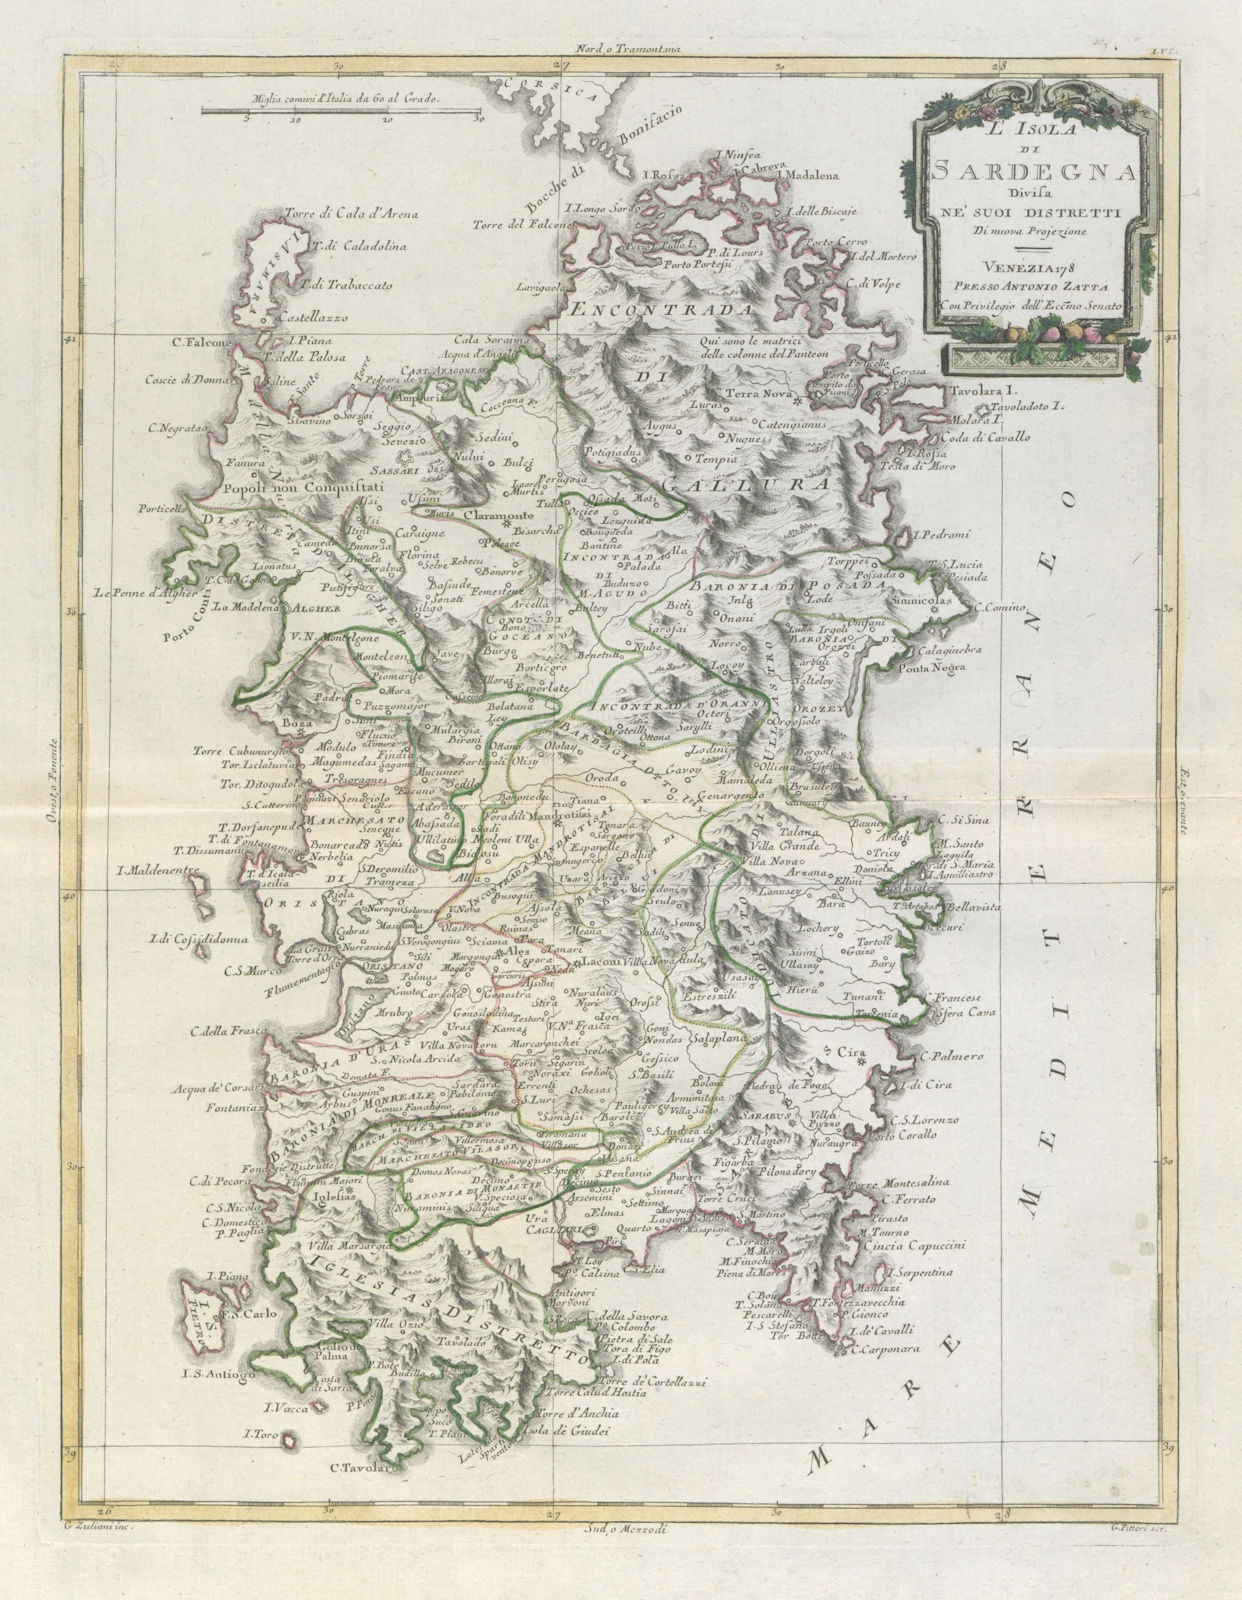 Associate Product "L'Isola di Sardegna divisa ne' suoi distretti". Sardinia. ZATTA 1784 old map